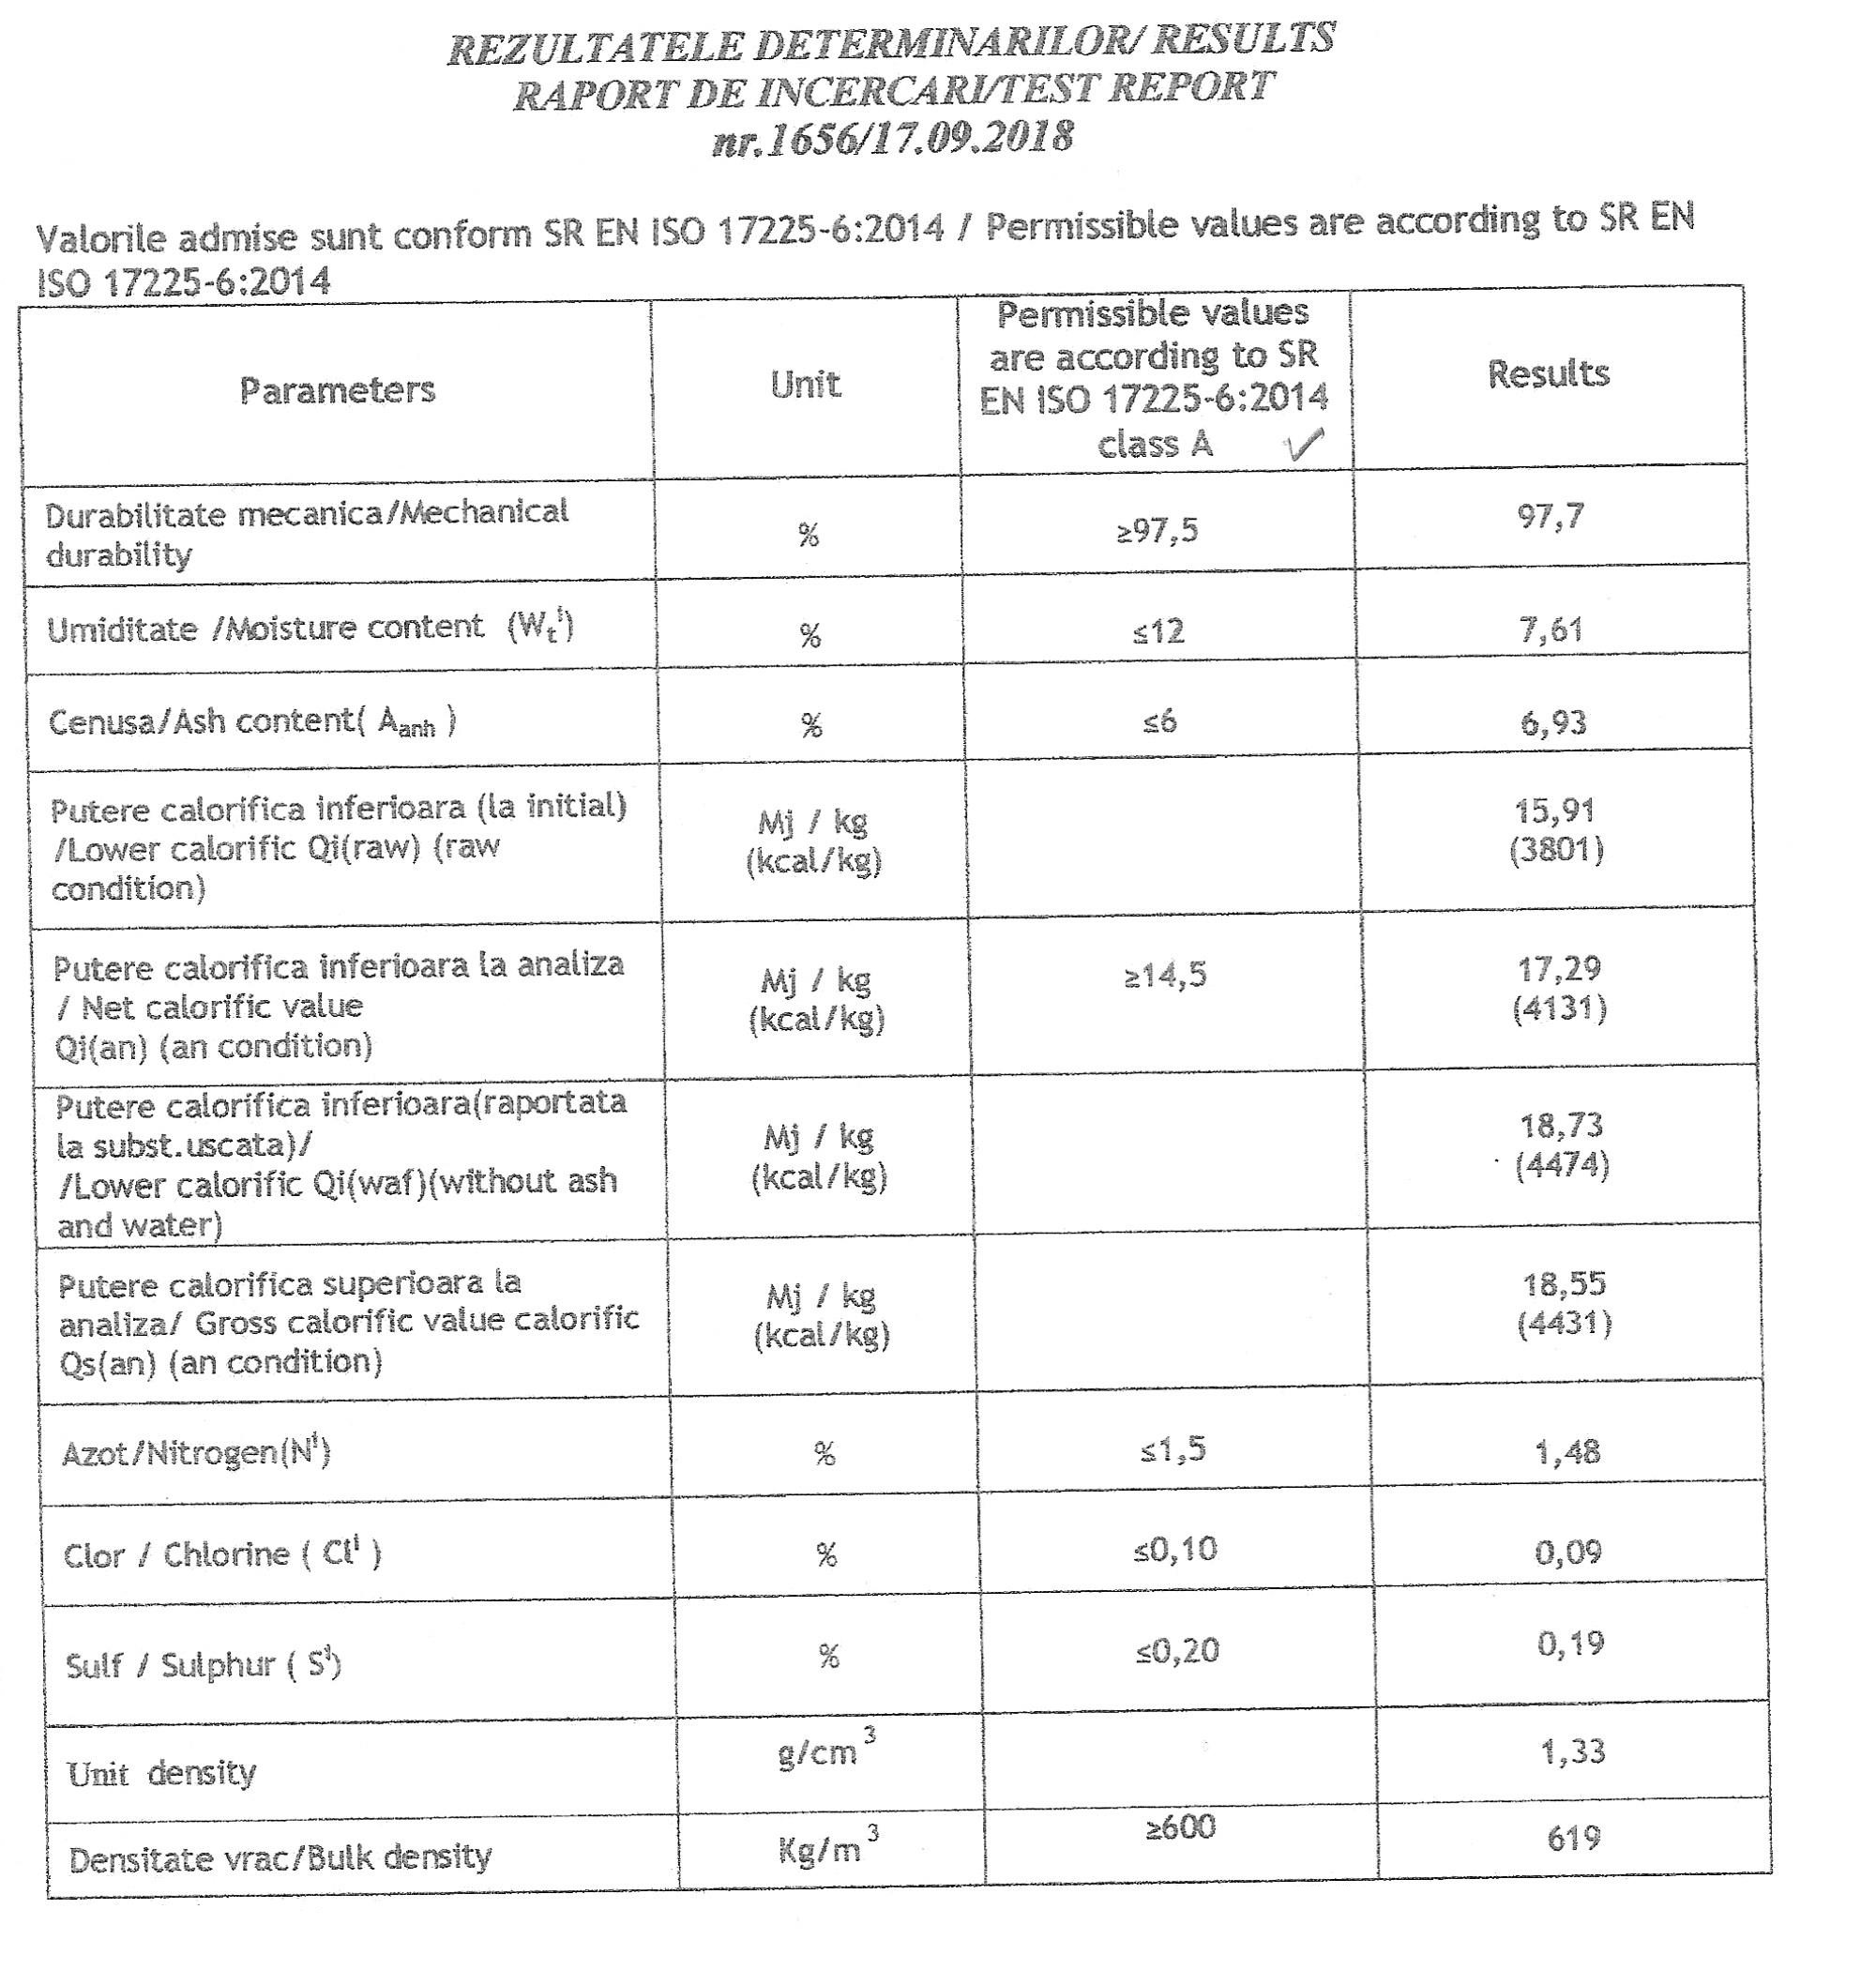 Extras-Raport incercari nr. 1656_17.09.2018-peleti biomasa-2_2